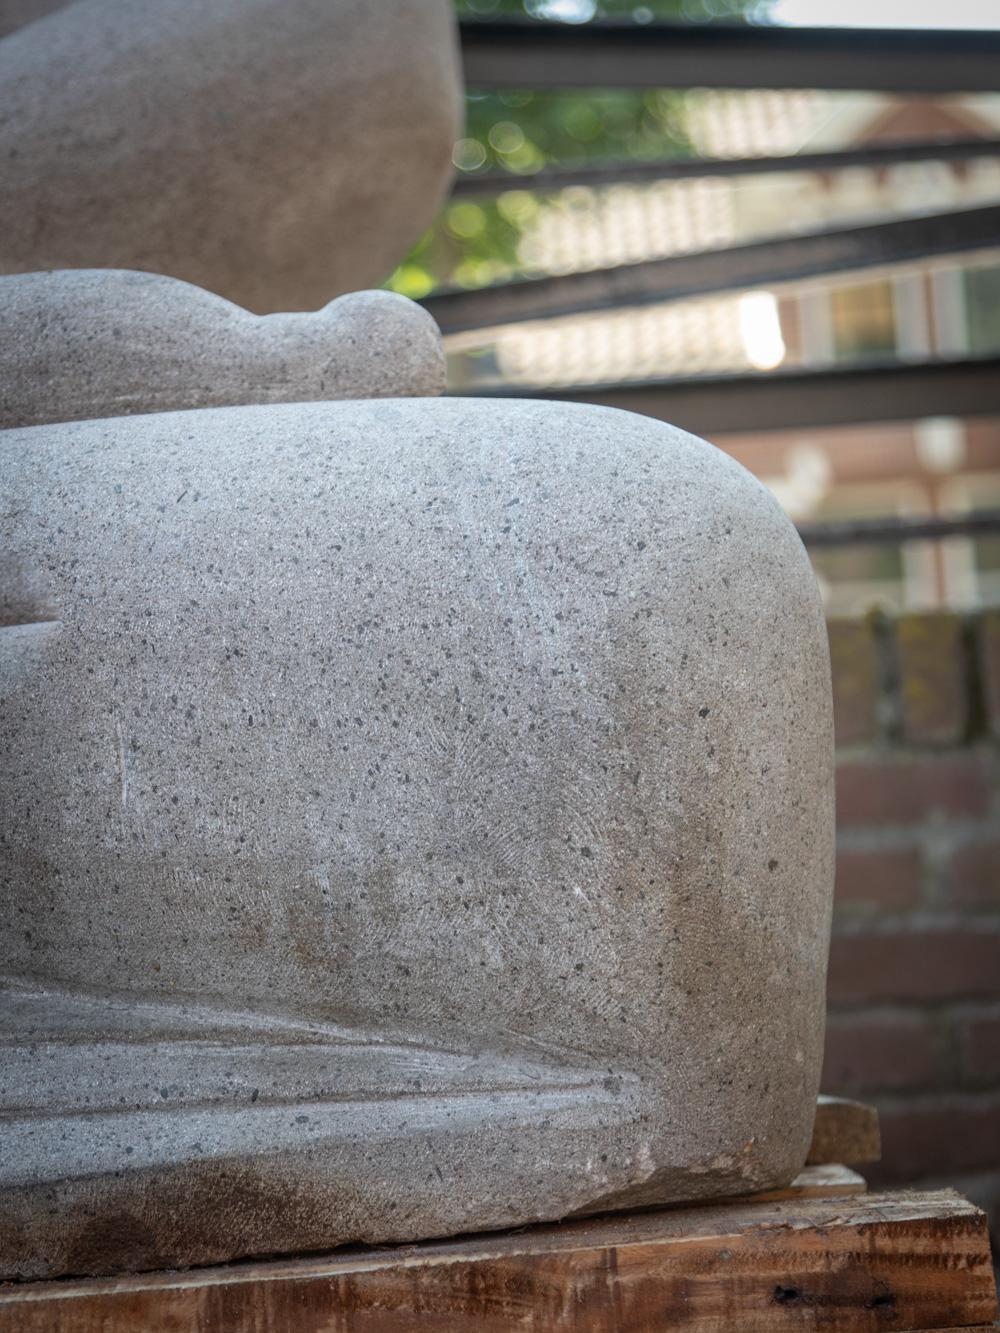 Diese Buddha-Statue aus Lavastein ist wirklich außergewöhnlich. Er ist aus einem einzigen Lavasteinblock handgeschnitzt und erreicht eine beeindruckende Höhe von 190 cm bei einer Breite von 134 cm und einer Tiefe von 94 cm. Mit einem geschätzten